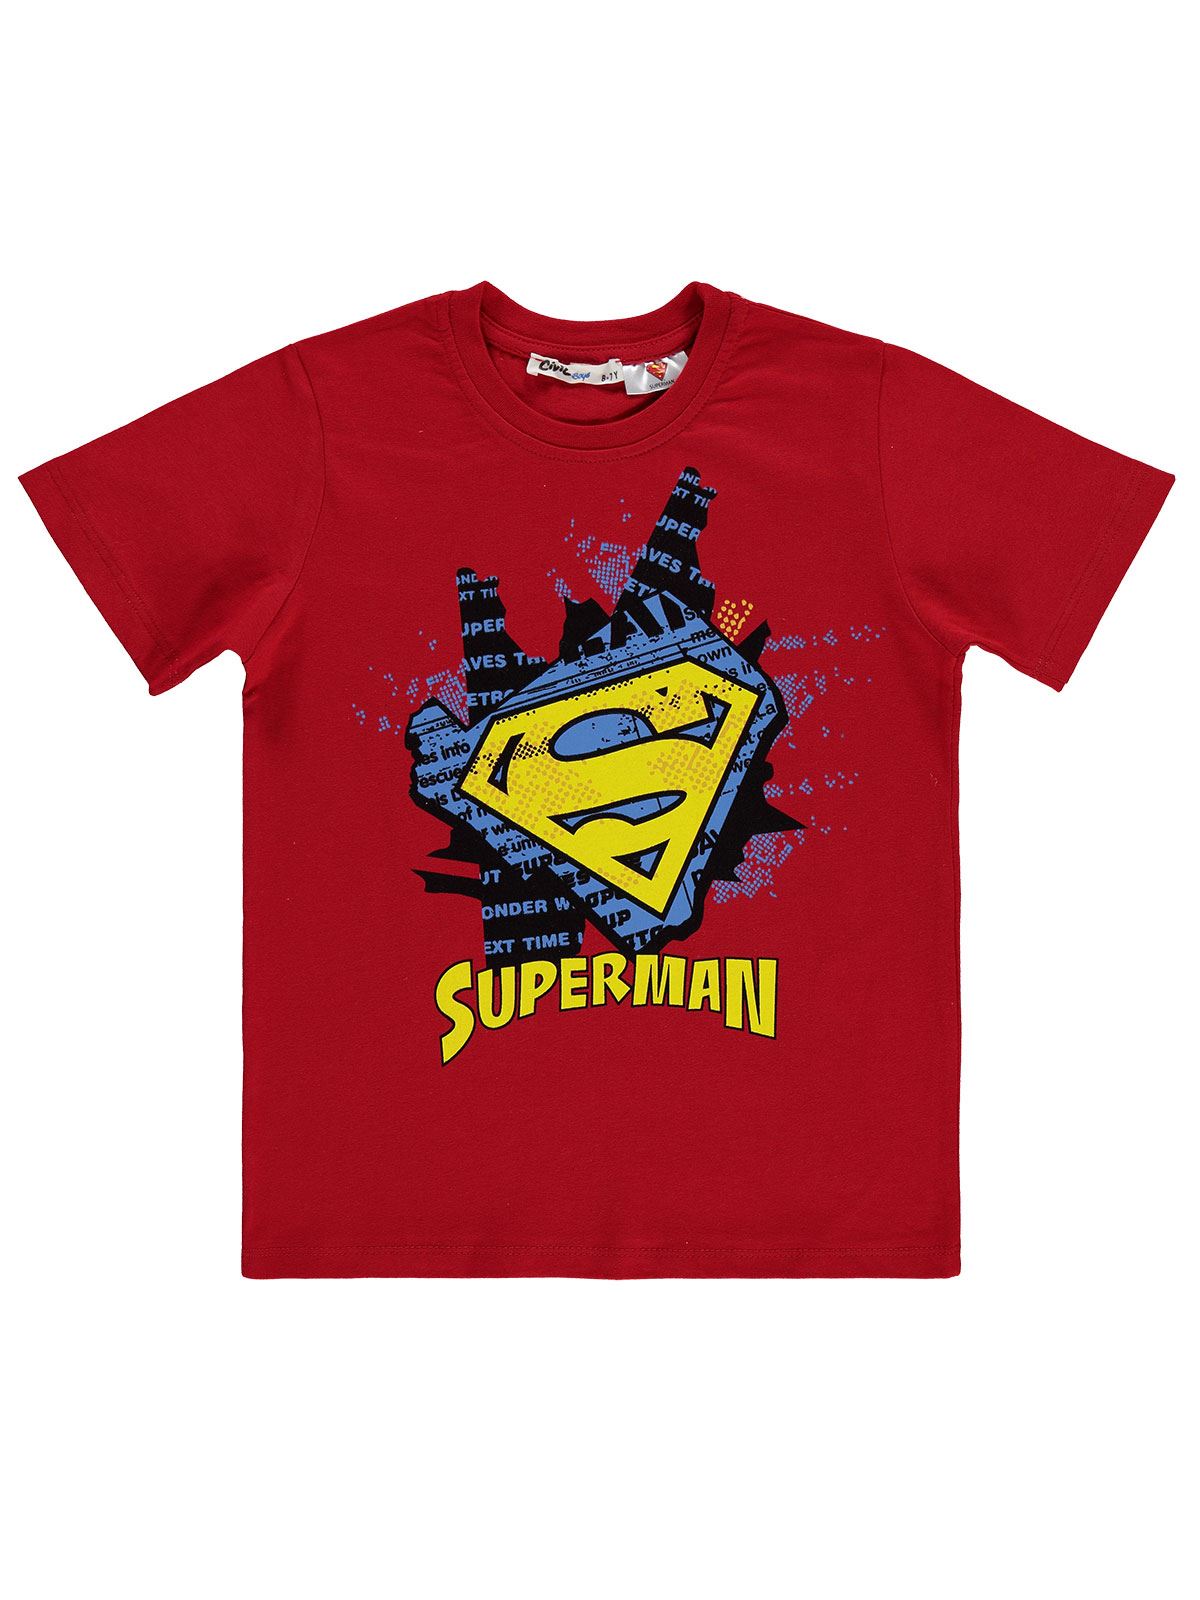 Süperman Erkek Çocuk Tişört 6-9 Yaş Kırmızı